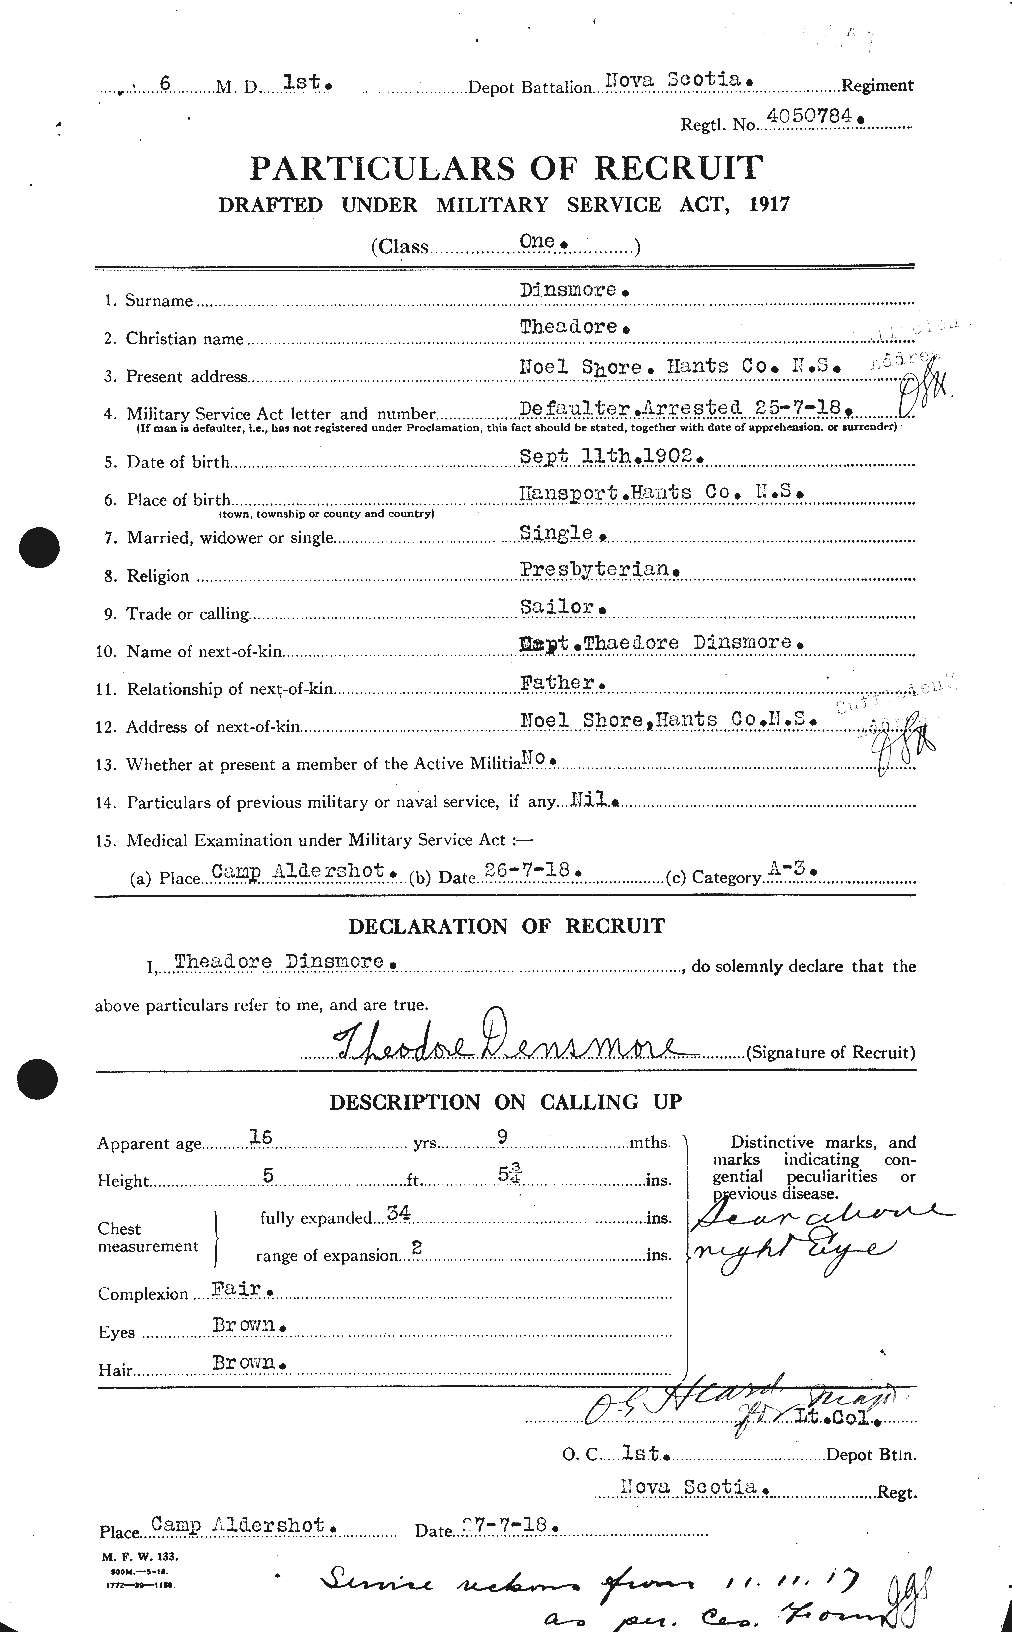 Dossiers du Personnel de la Première Guerre mondiale - CEC 286439a